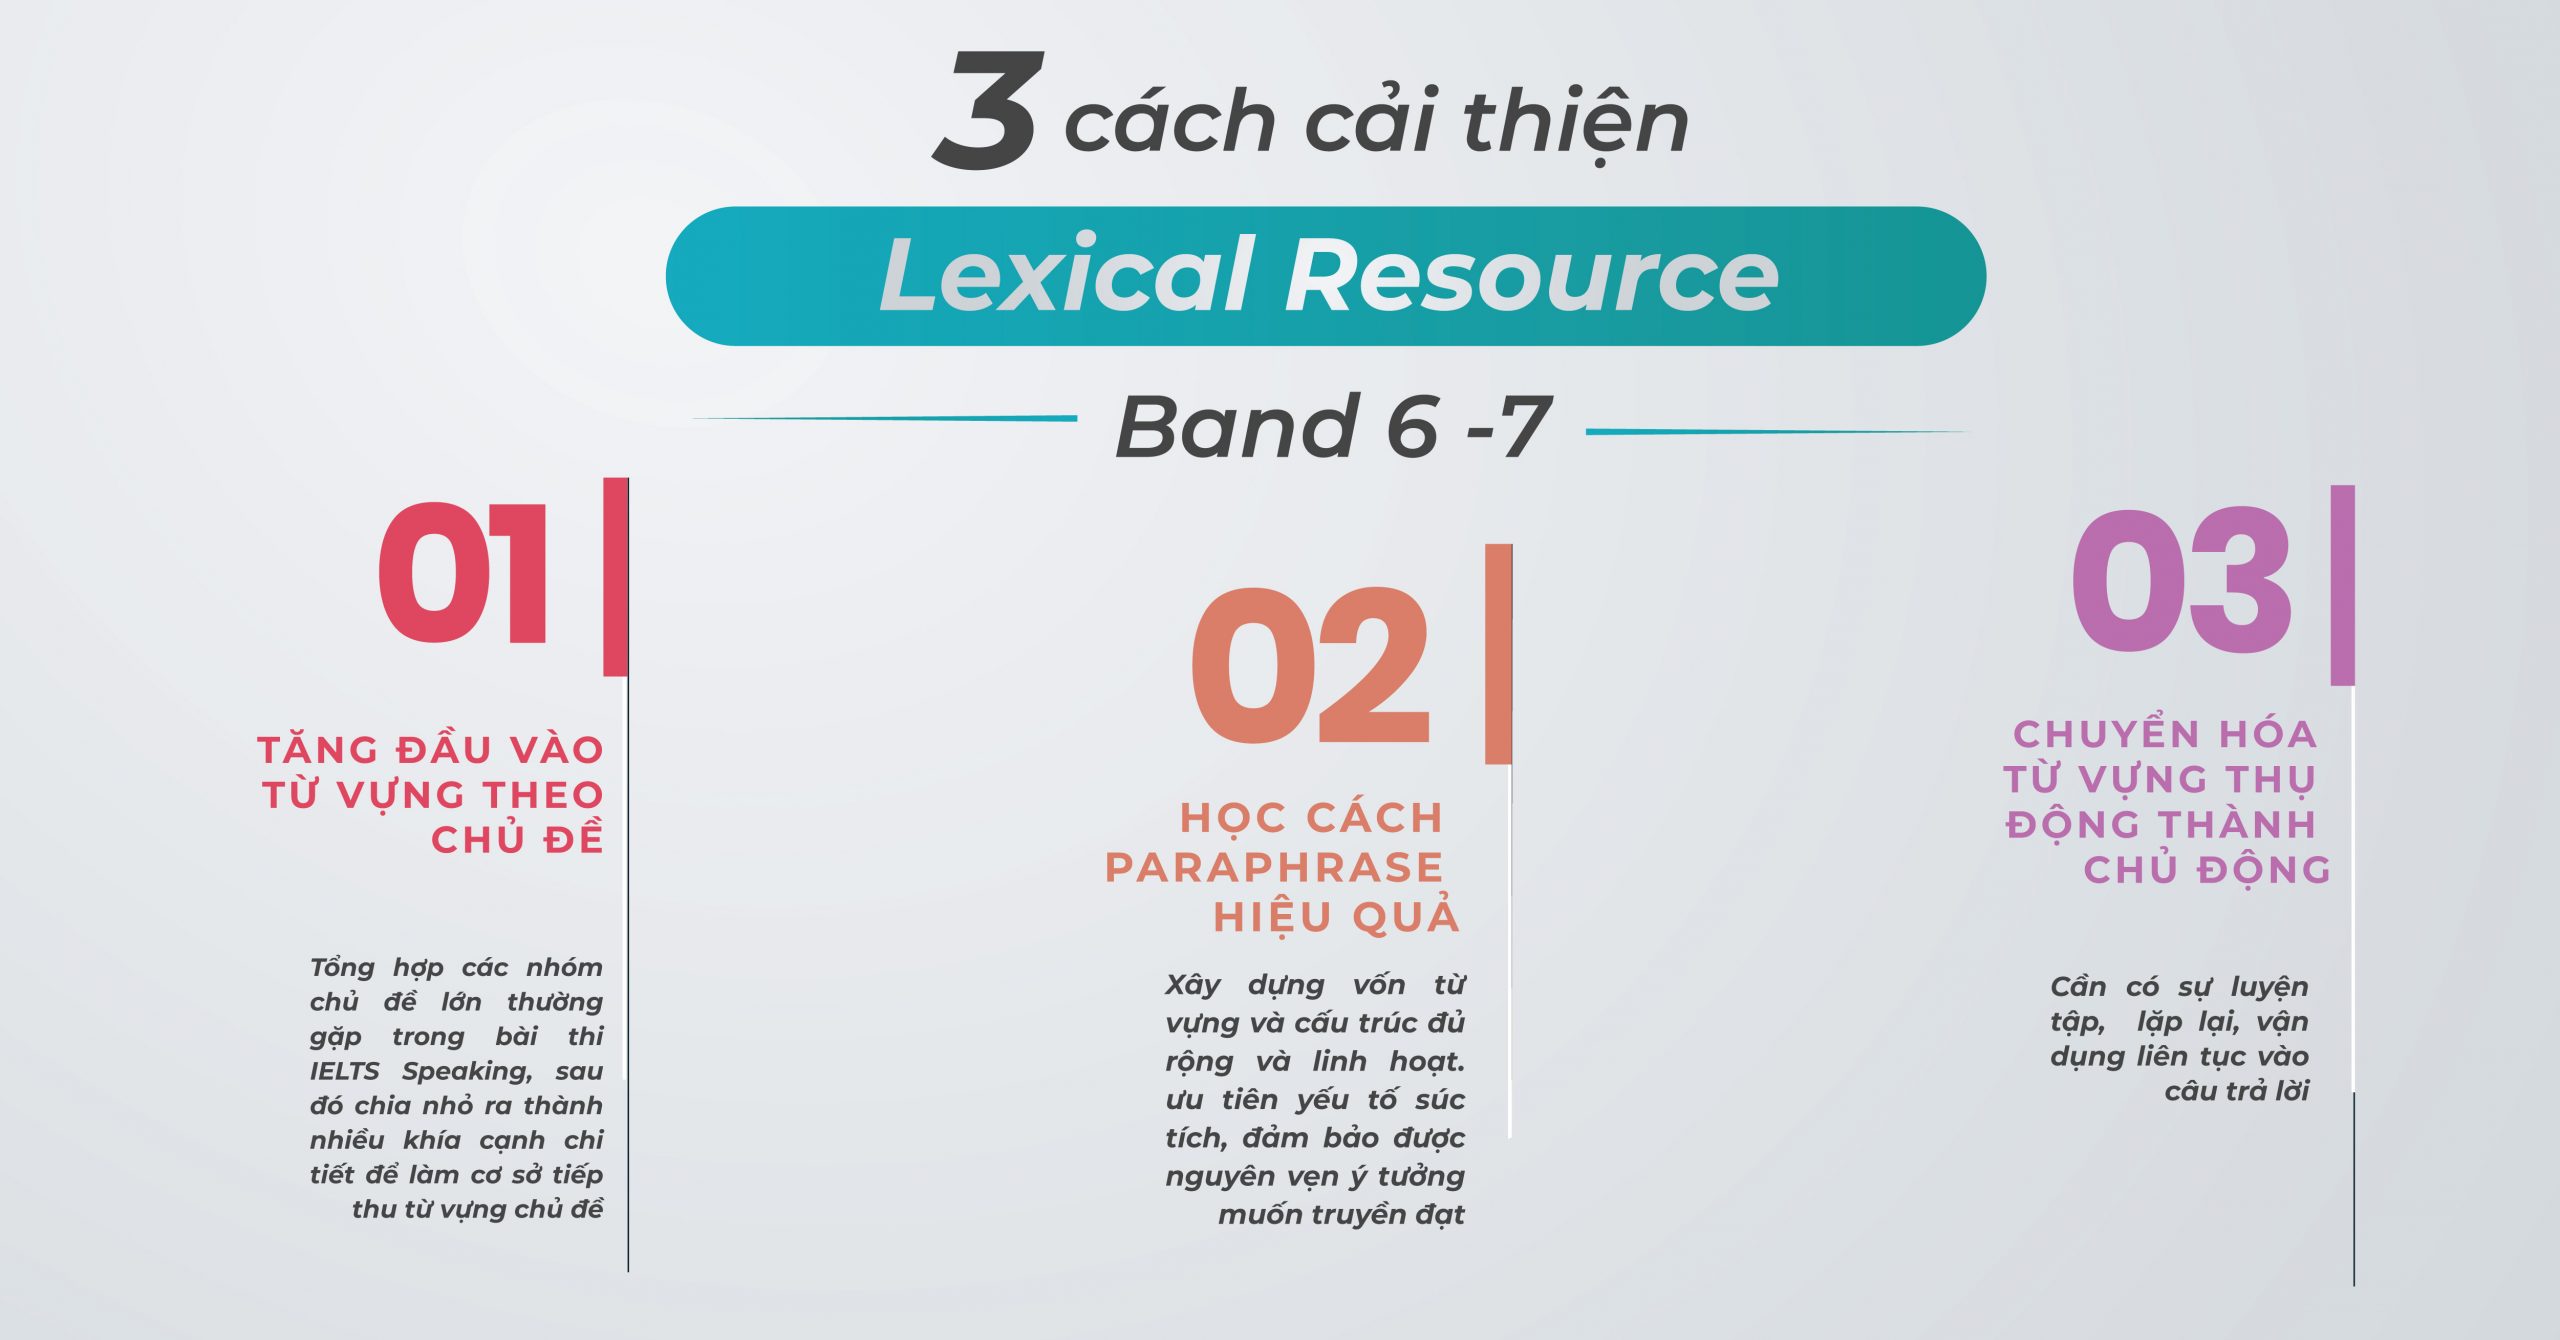 3-cach-cai-thien-lexical-resource